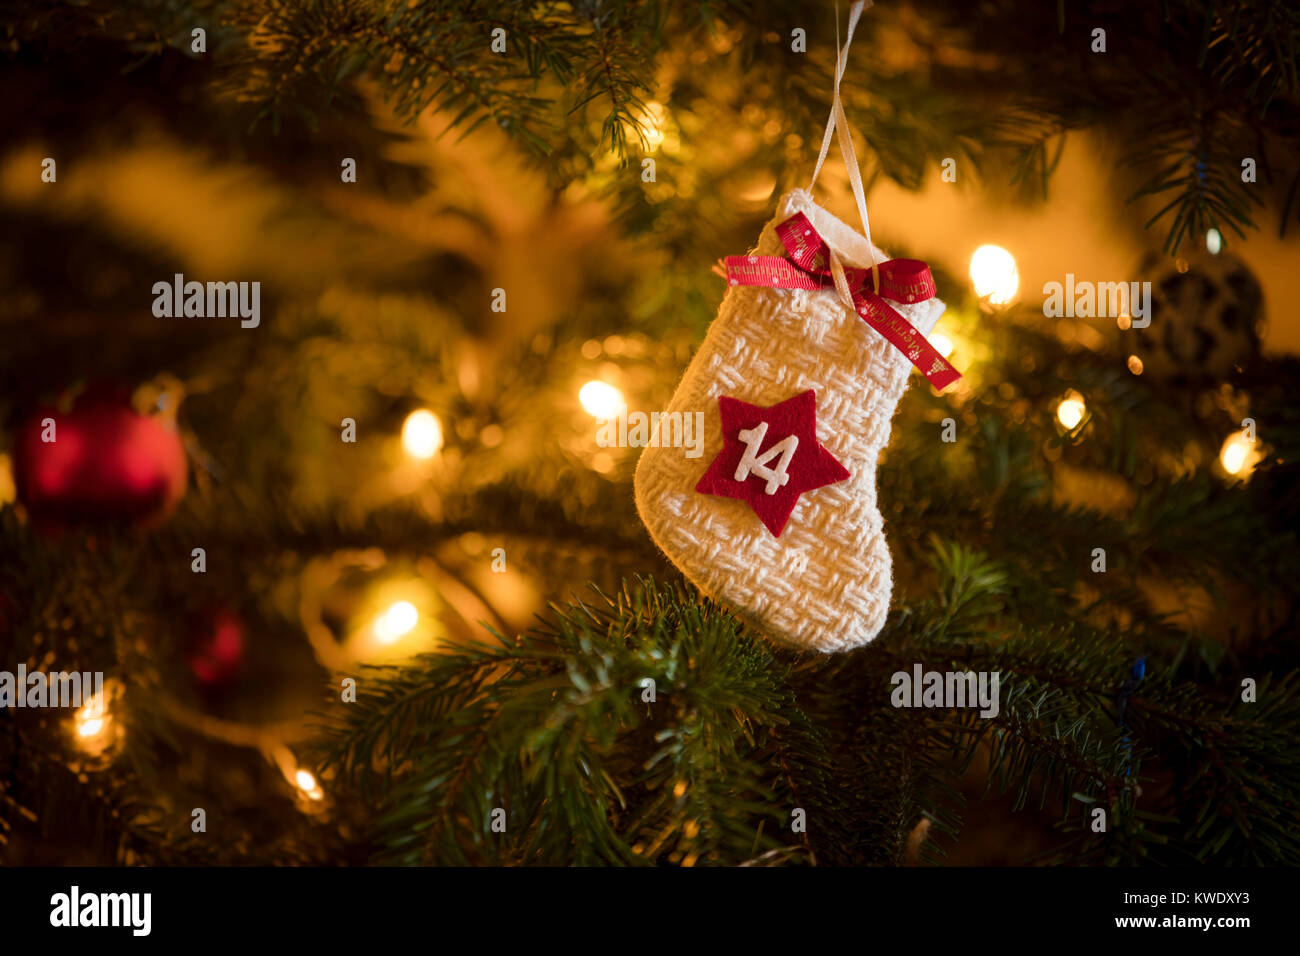 Data Del Natale.Tradizionale Calendario D Avvento Calza Con La Data Del 14 Dicembre Appeso Su Un Tradizionale Albero Di Natale Foto Stock Alamy